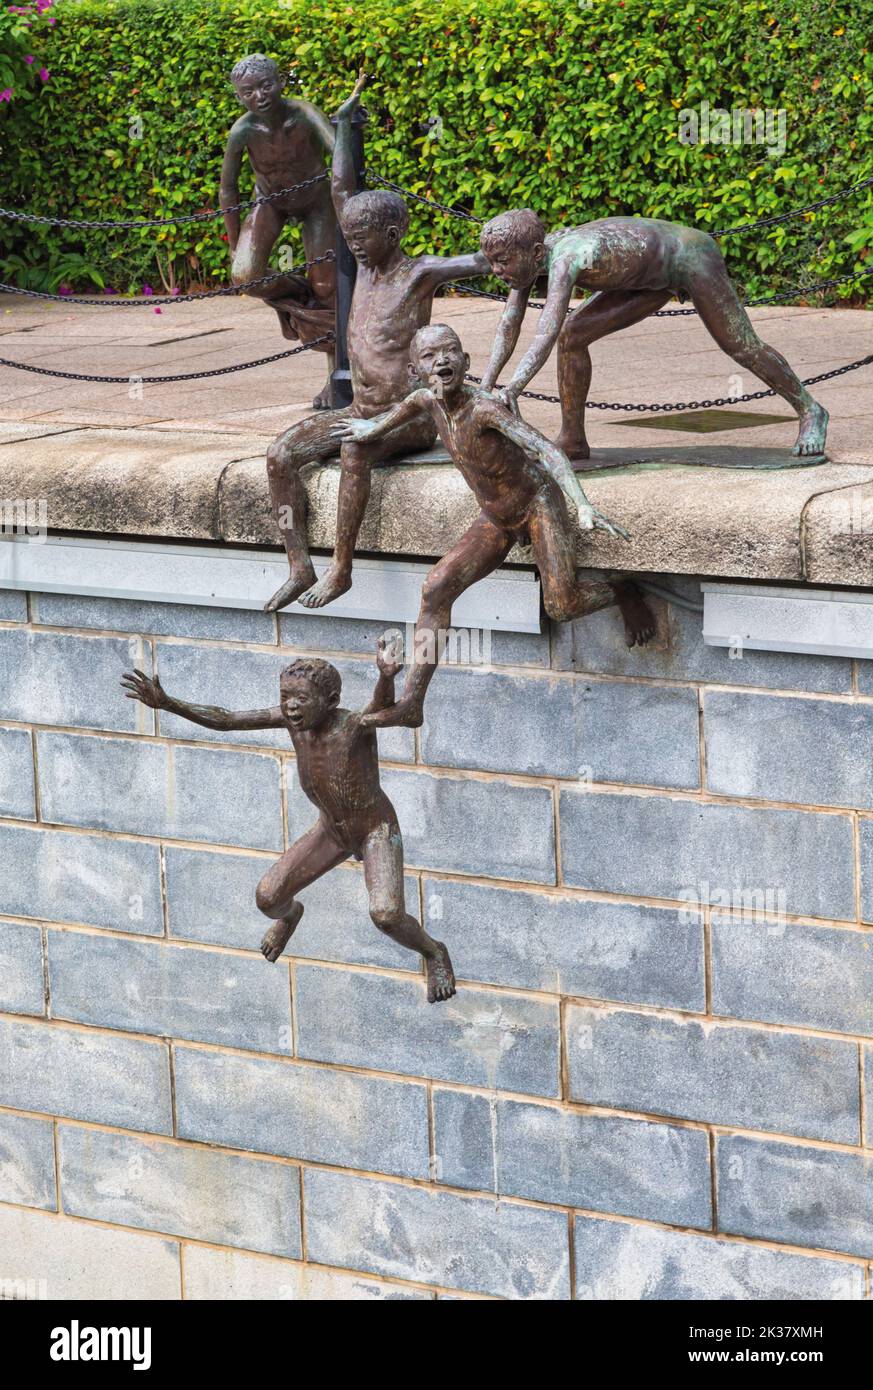 La prima generazione, una scultura in bronzo dell'artista singaporiano Chong Fah Cheong, nata nel 1946. Repubblica di Singapore. Foto Stock